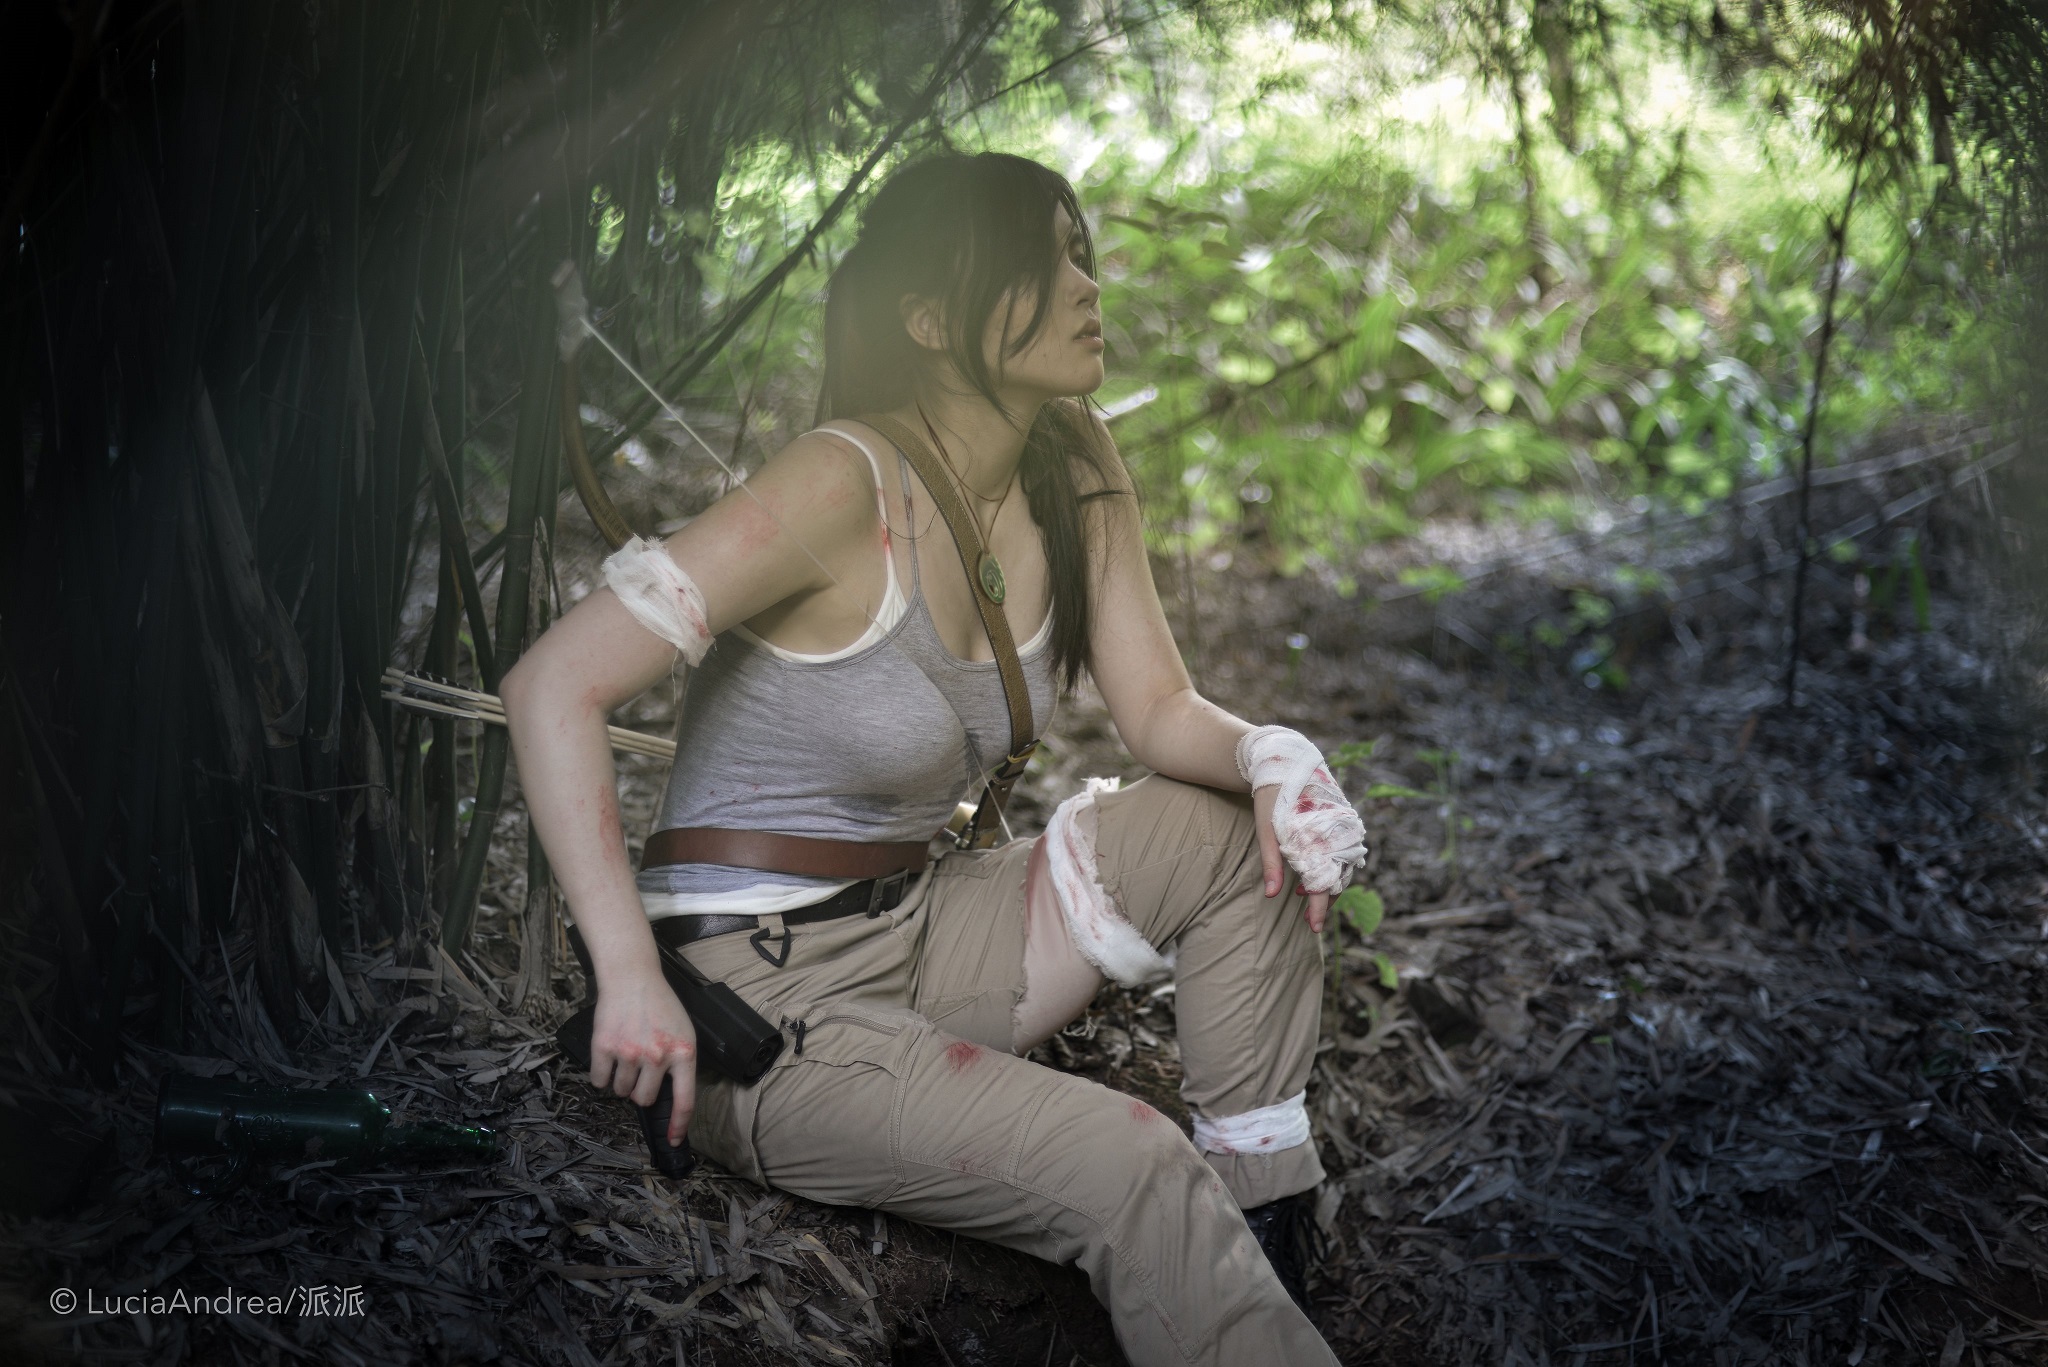 คอสเพลย์ Lara Croft ในเกม Tomb Raider จาก LuciaSAndrea